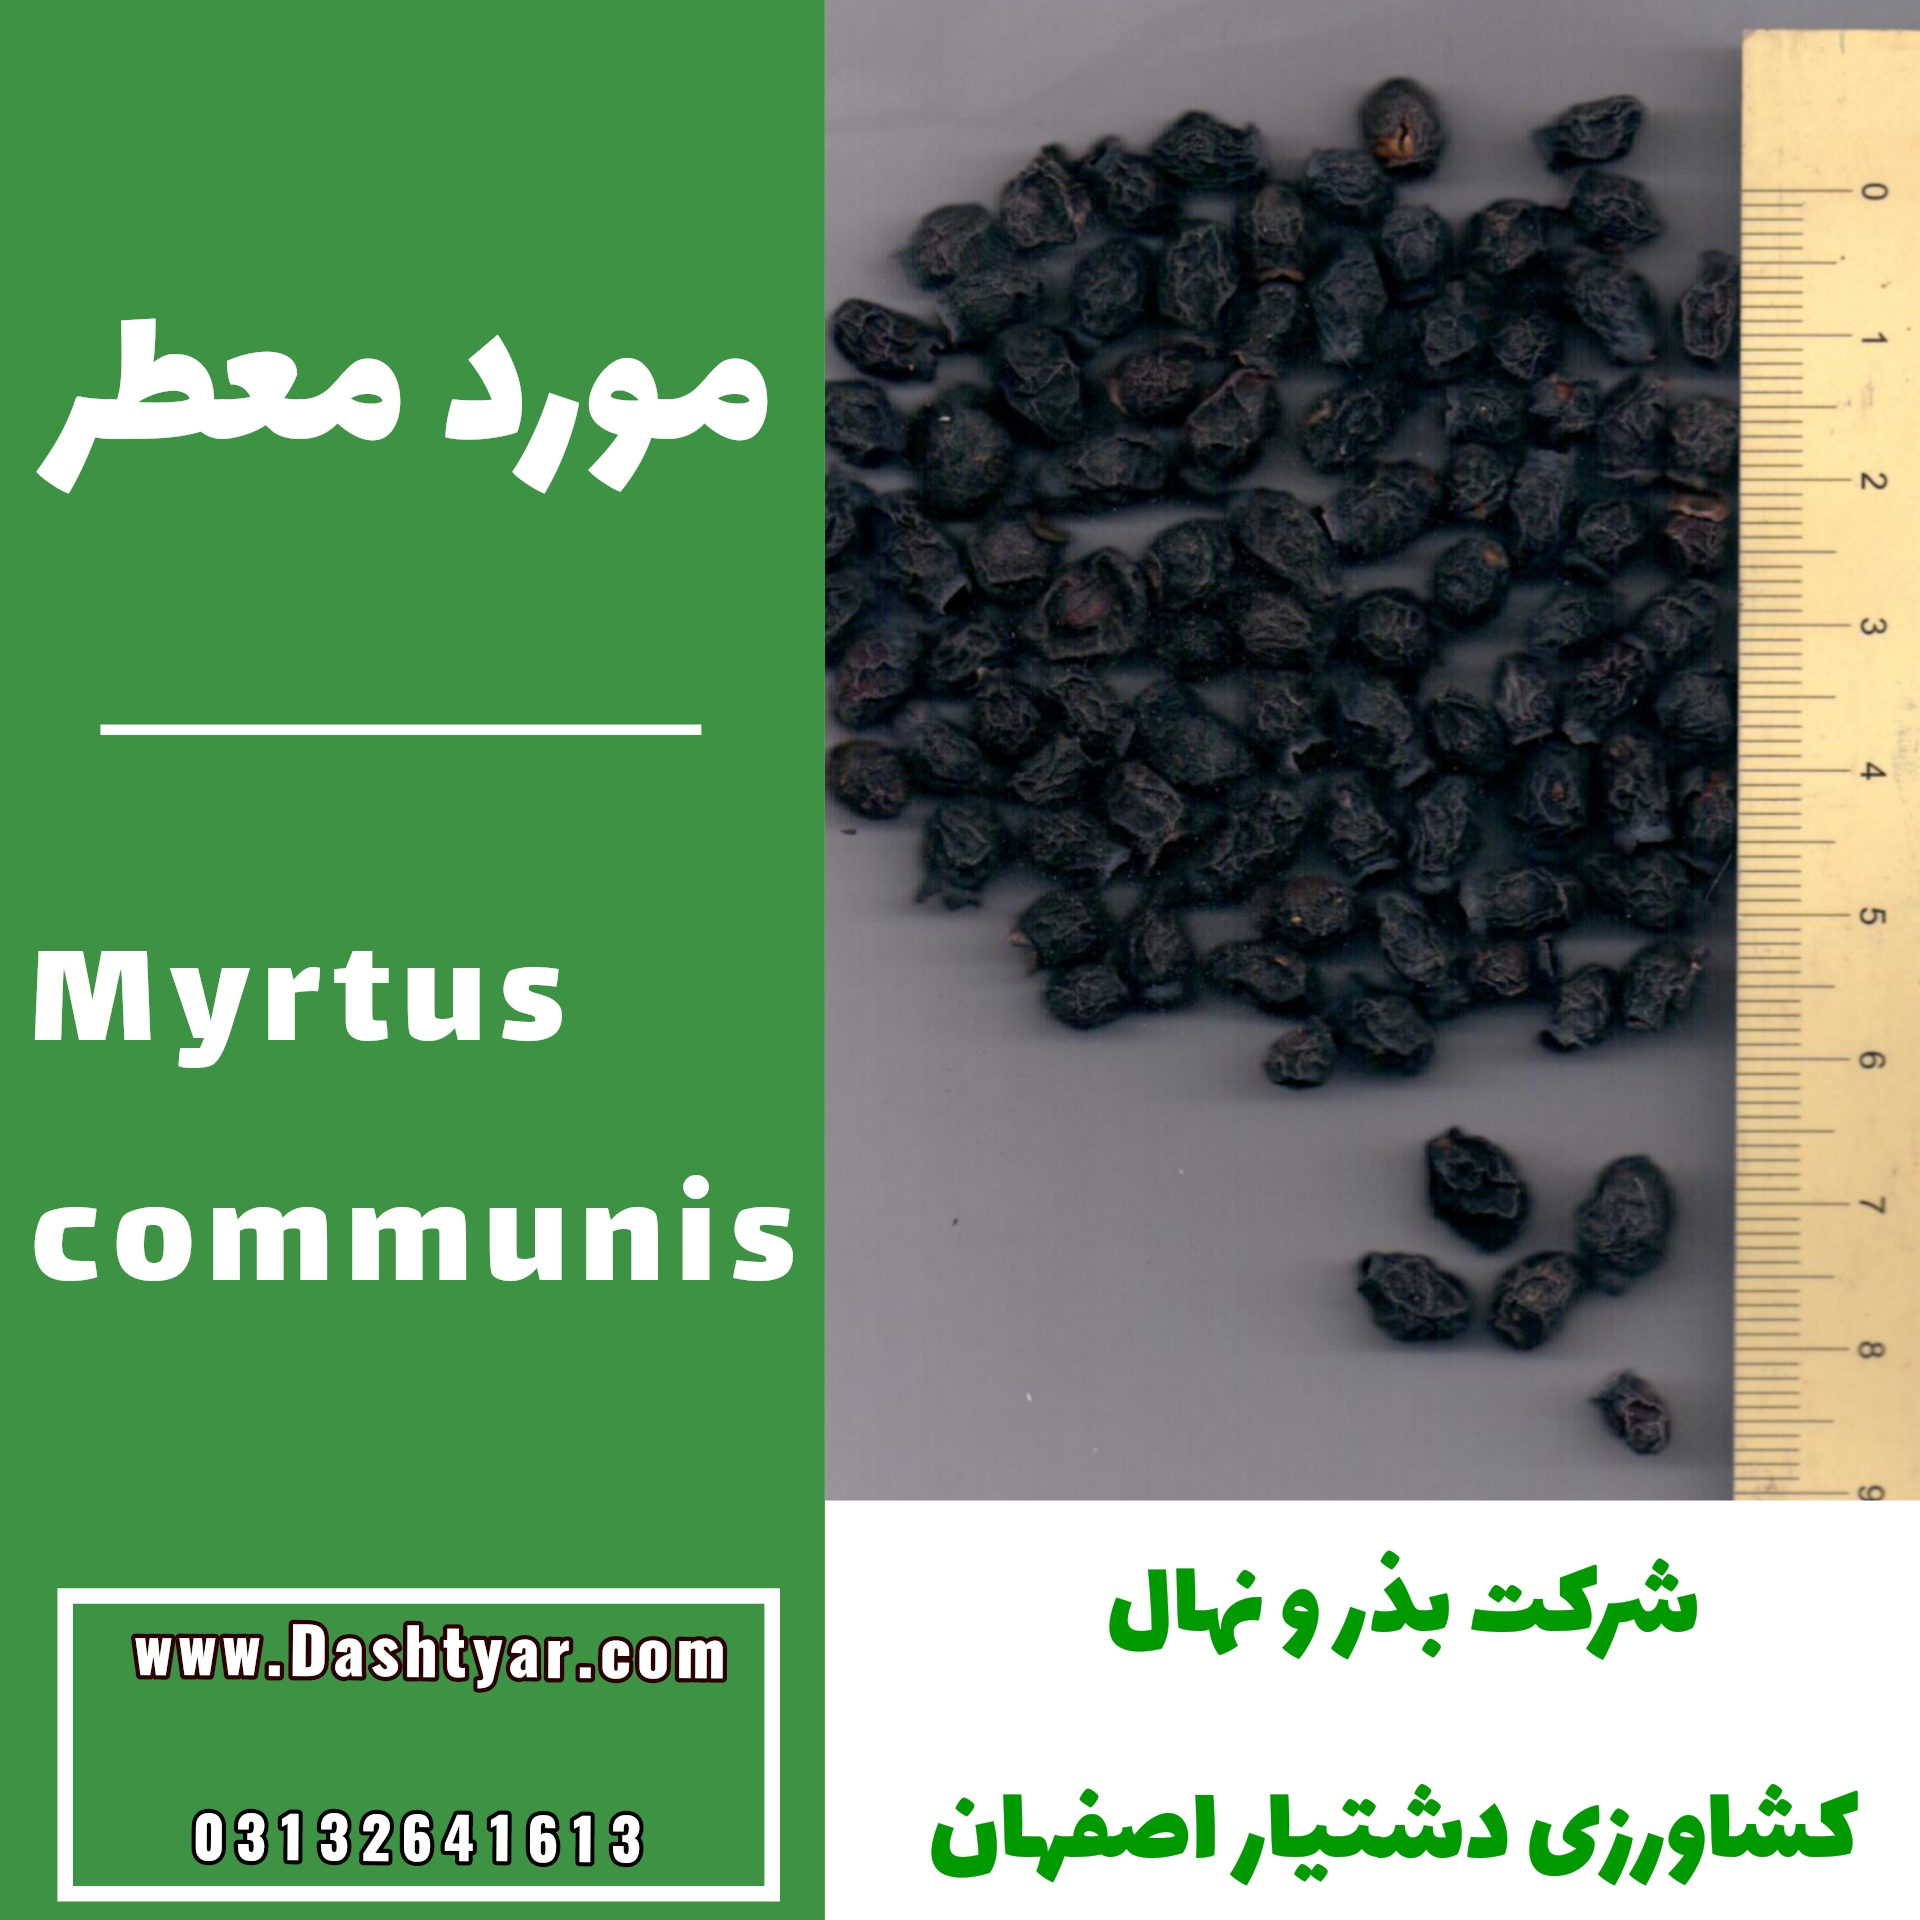 بذر مورد معطر myrtus communis